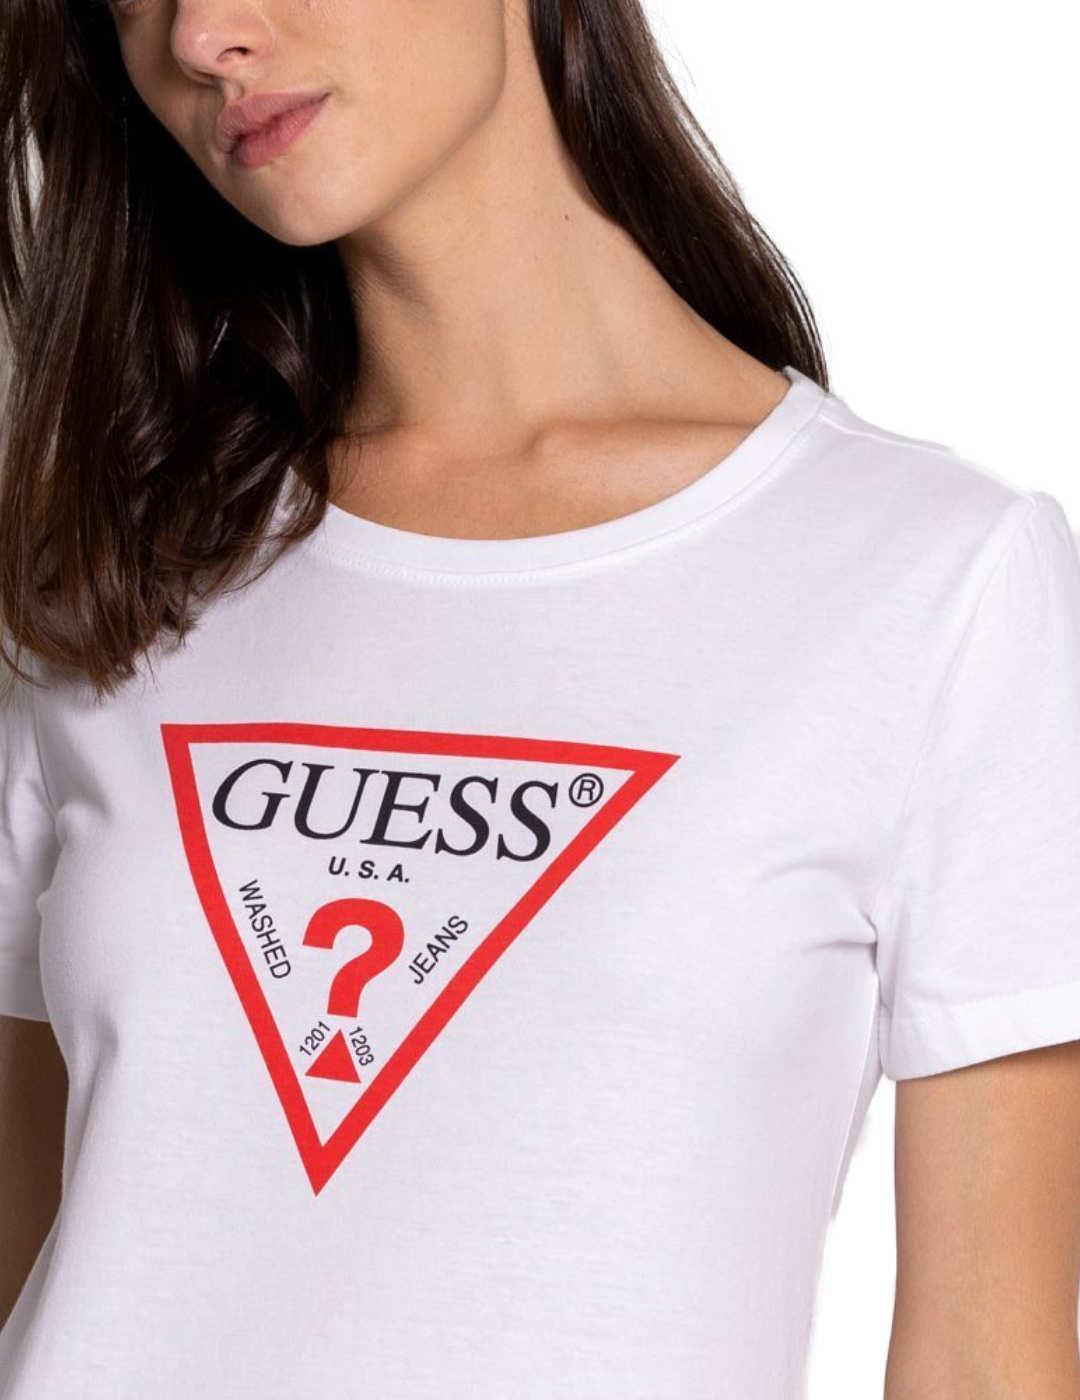 plan Perplejo después de esto Camiseta Guess original basica blanco para mujer-z